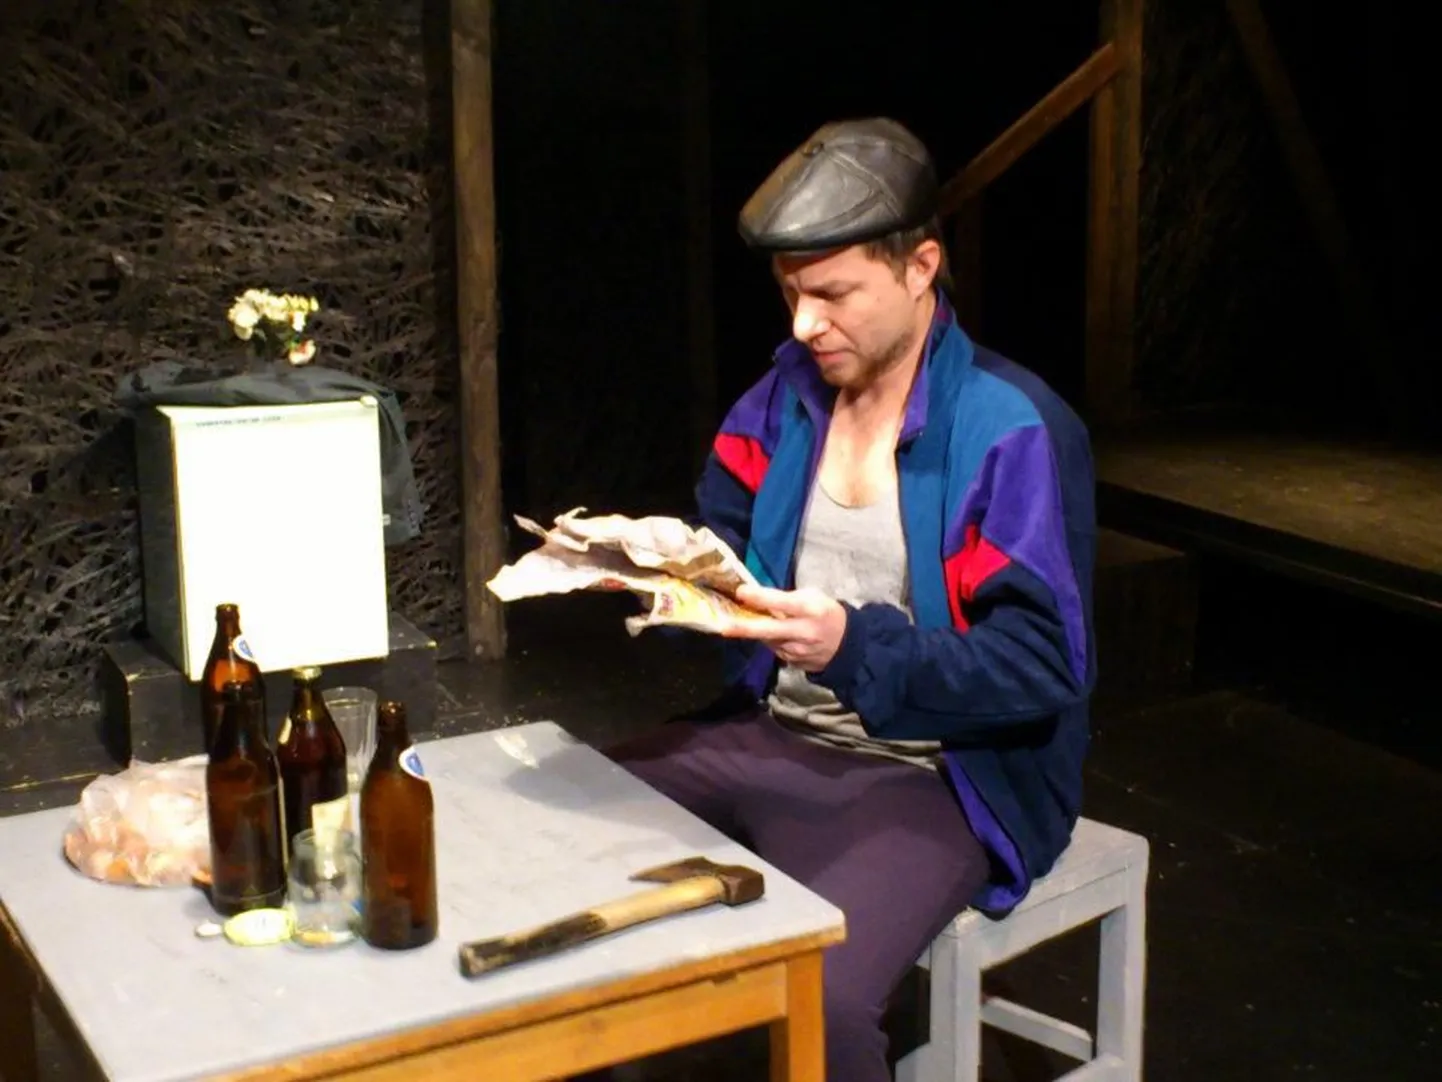 Ханно Йоорик (Тимур Иликаев) читает за бутылкой пива утреннюю газету. Ружья на стене нет, зато на столе лежит топор, а значит...